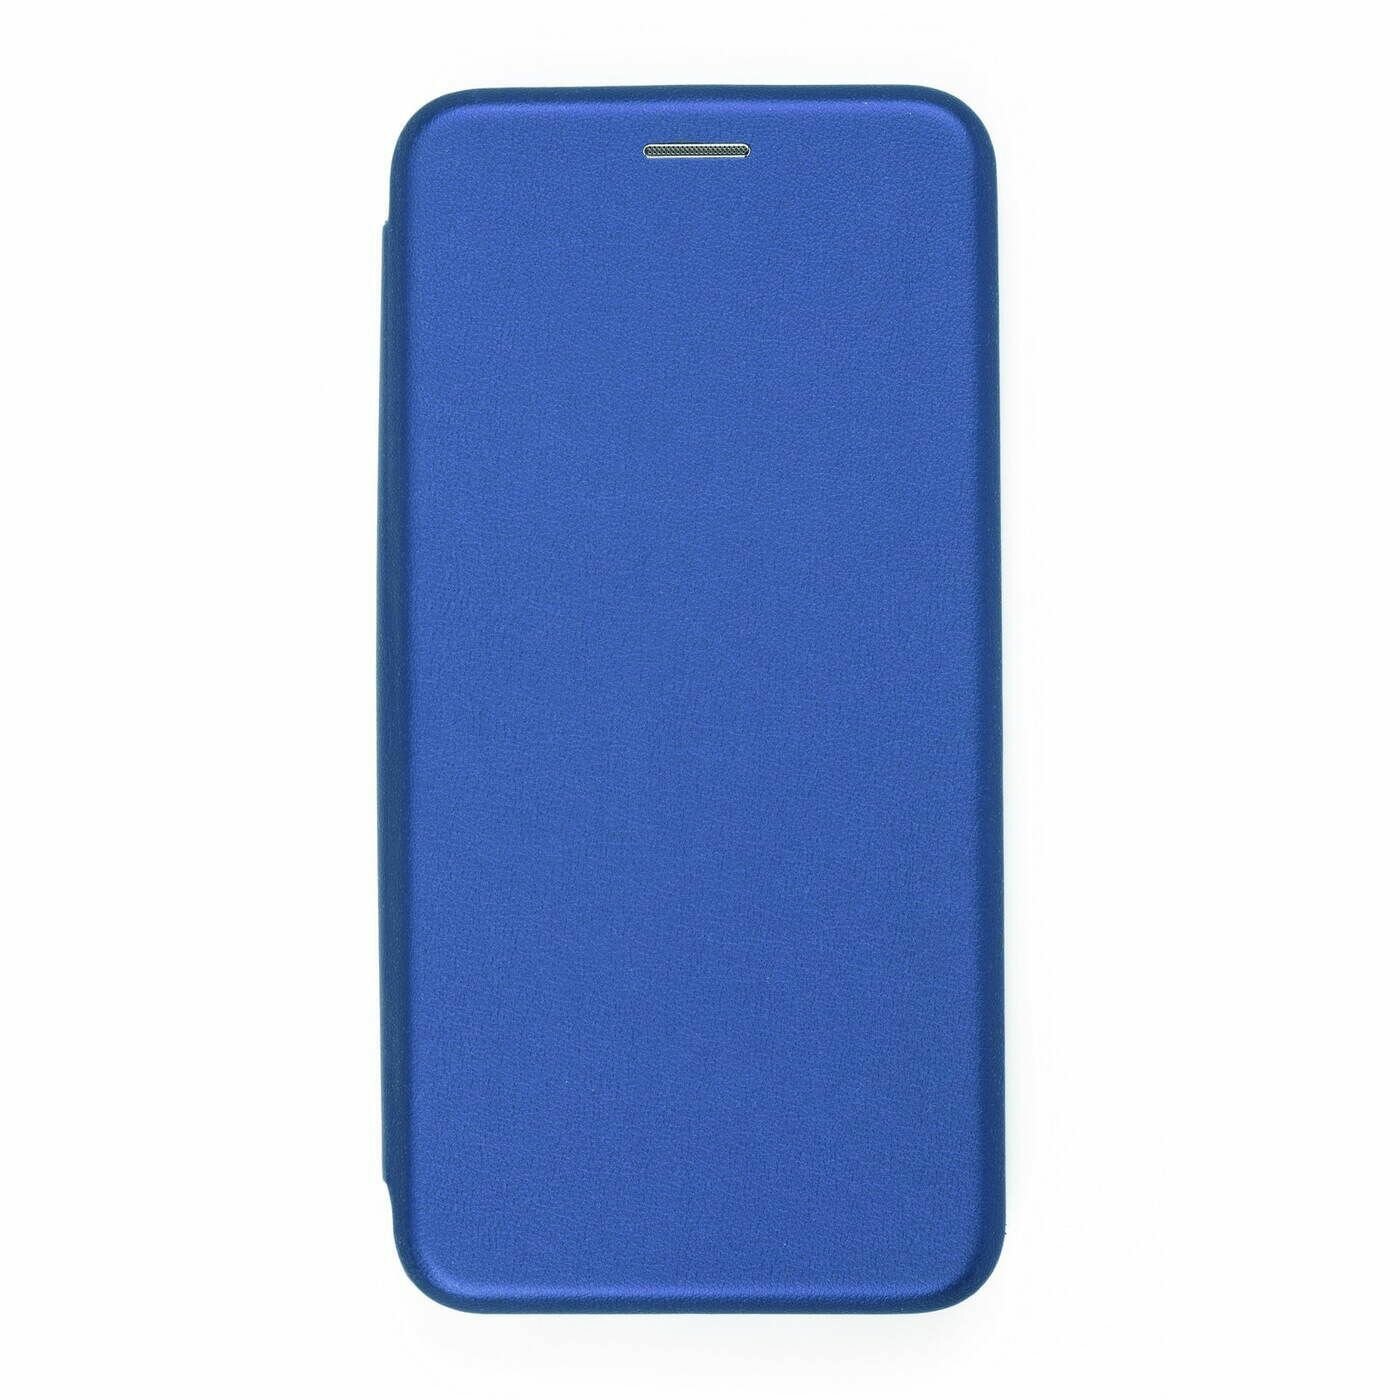 Чехол книжка для Samsung Galaxy S10 Lite синий с магнитной застежкой с визитницей